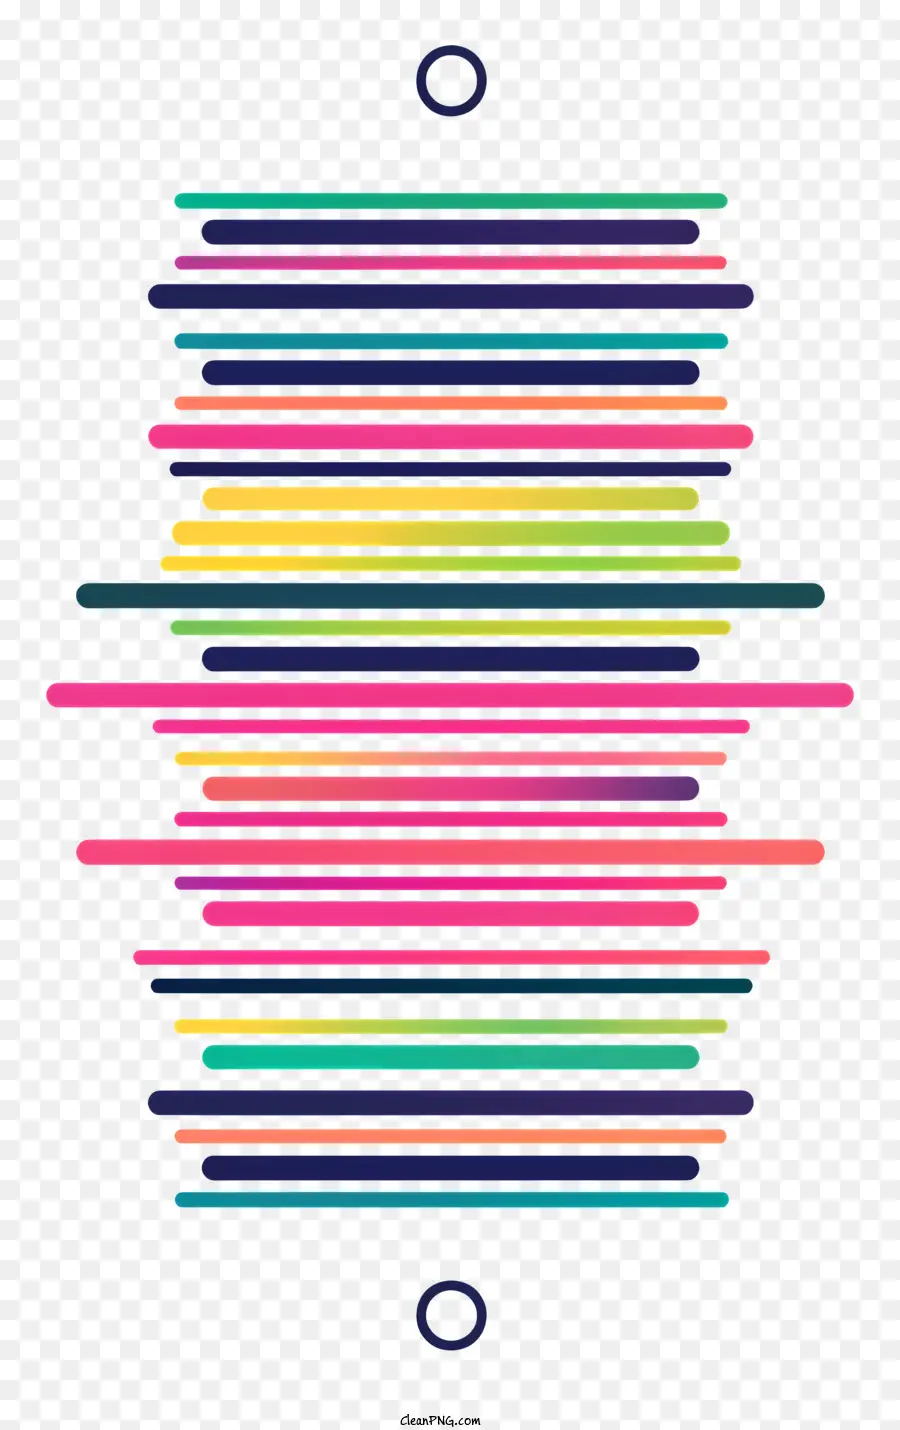 Đường phân chia đơn giản hình tròn hình tròn các sọc nhiều màu - Hình nón sọc với mẫu tròn nhiều màu có trật tự